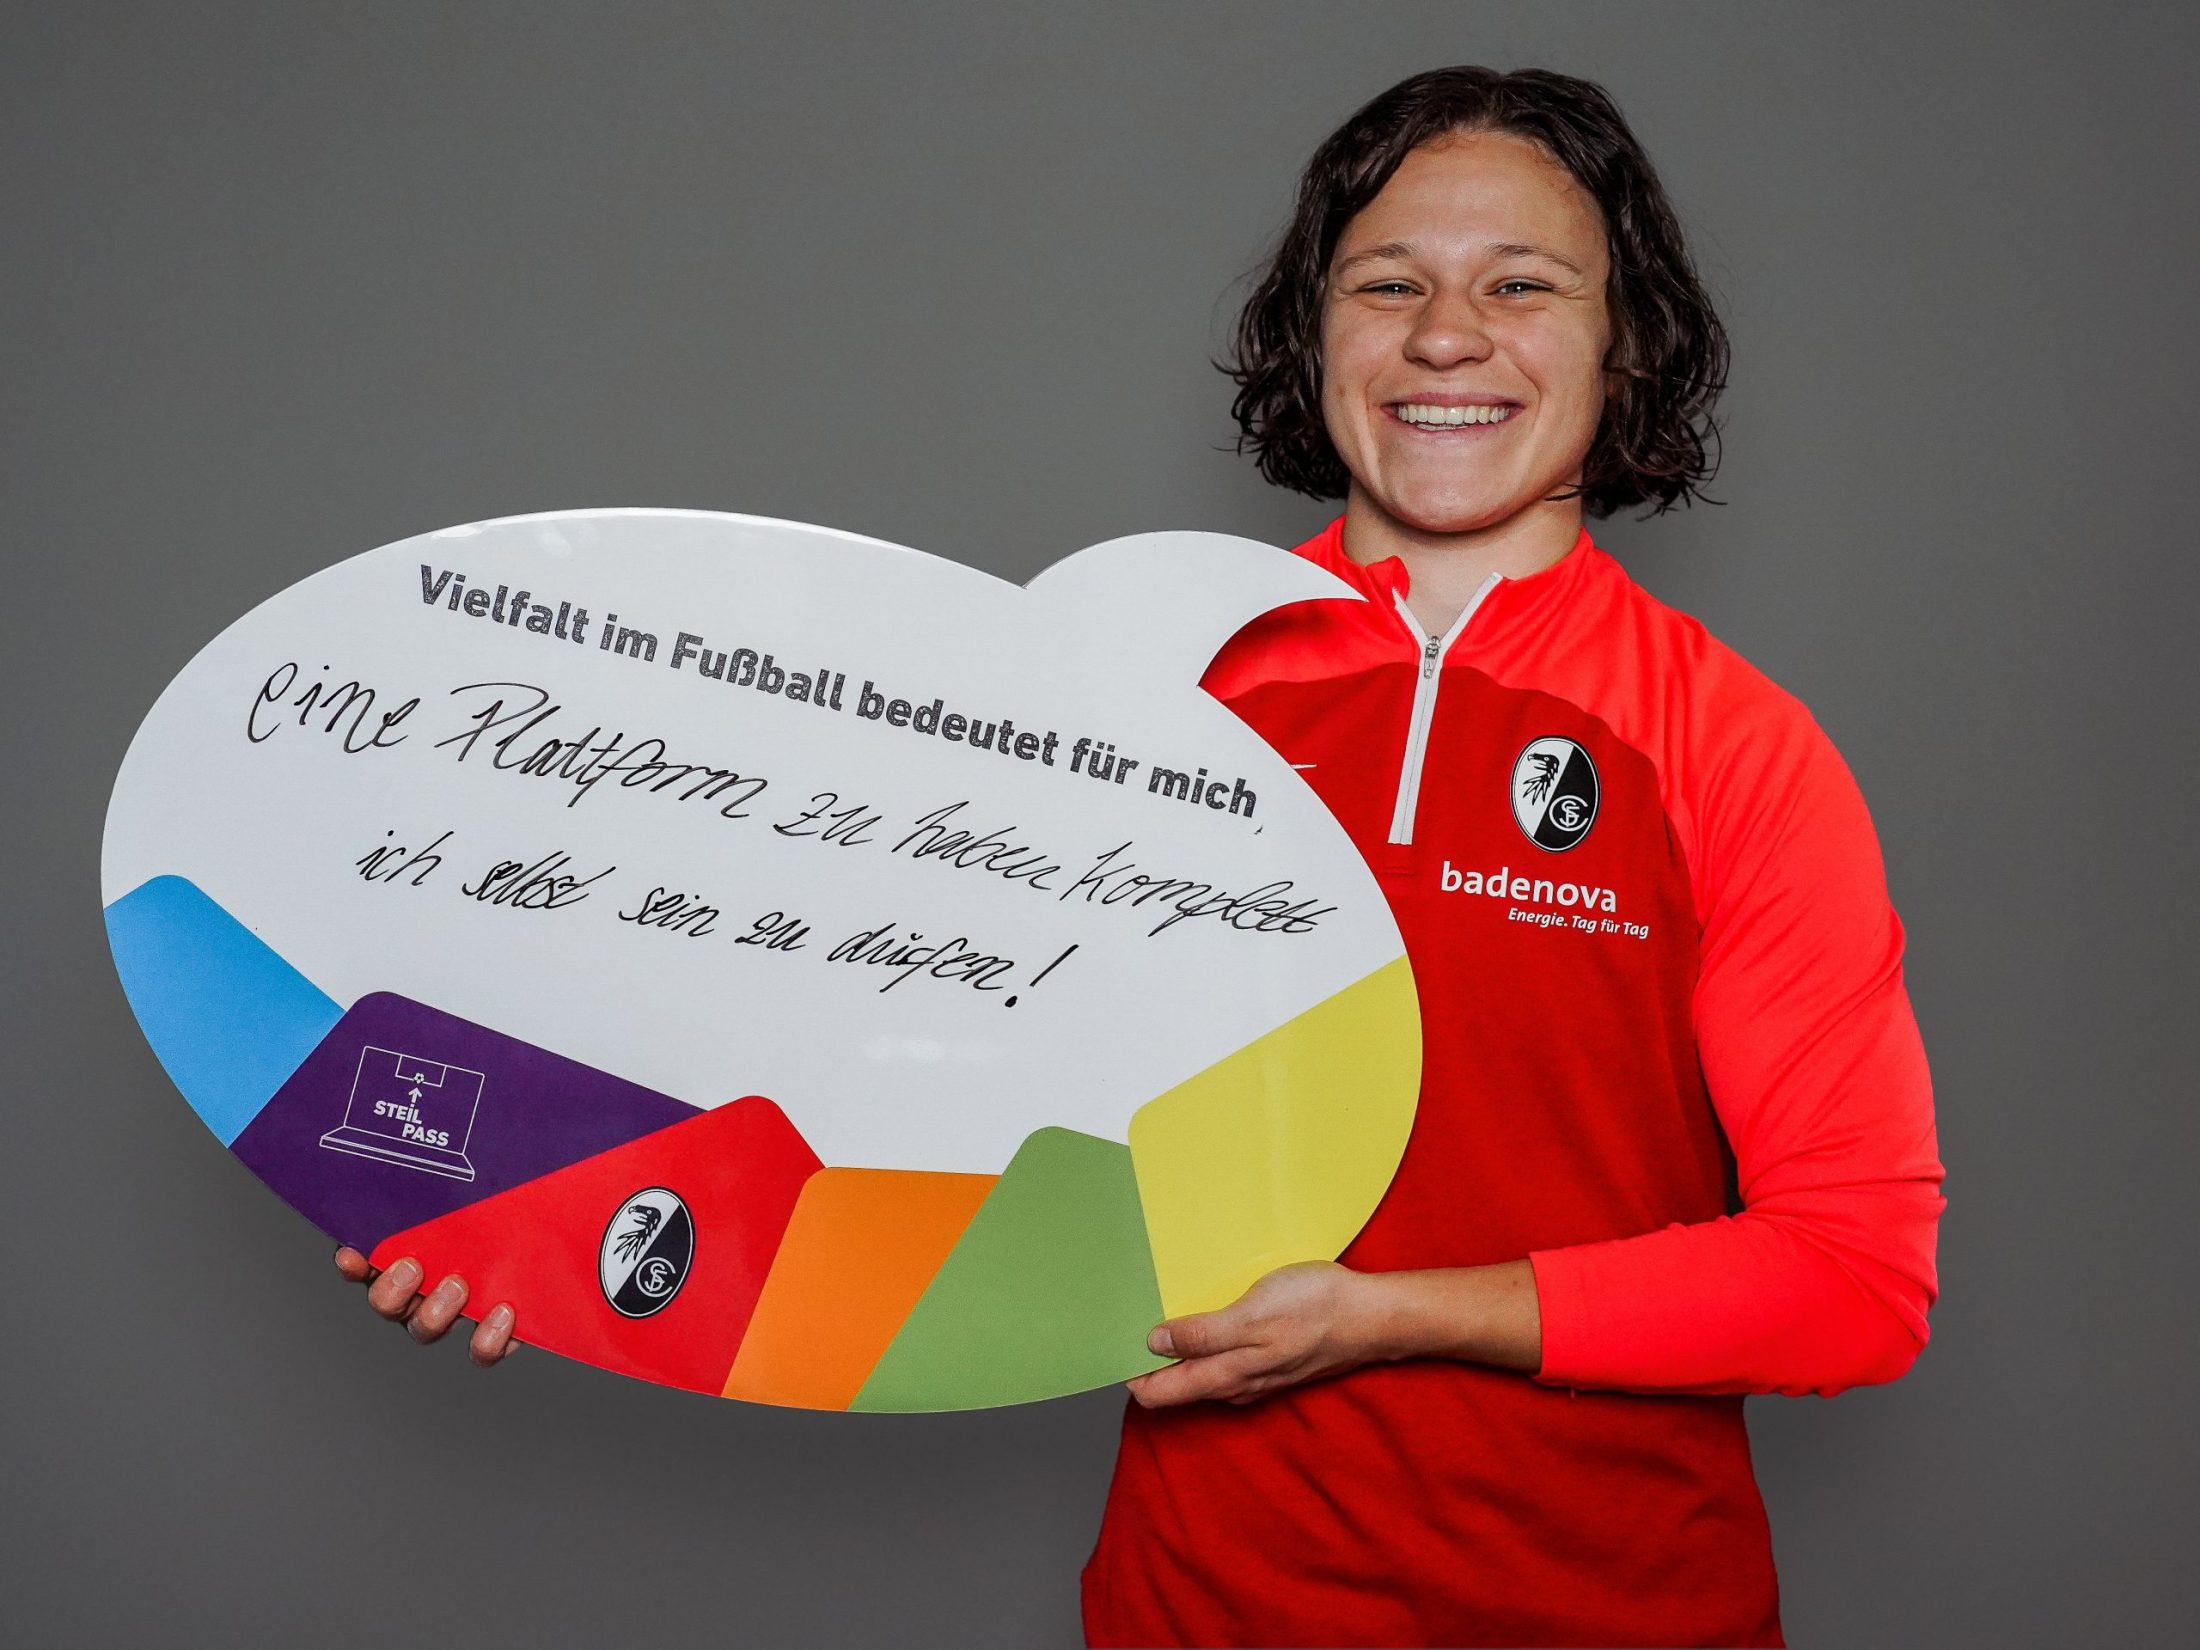 Weiße, weiblich gelesene Person mit einer SC Freiburg-Jacke hält eine Sprechblasenschild hoch. "Vielfalt im Fußball bedeutet für mich, eine Plattform zu haben - komplett ich selbst sein zu dürfen!", steht darauf geschrieben.